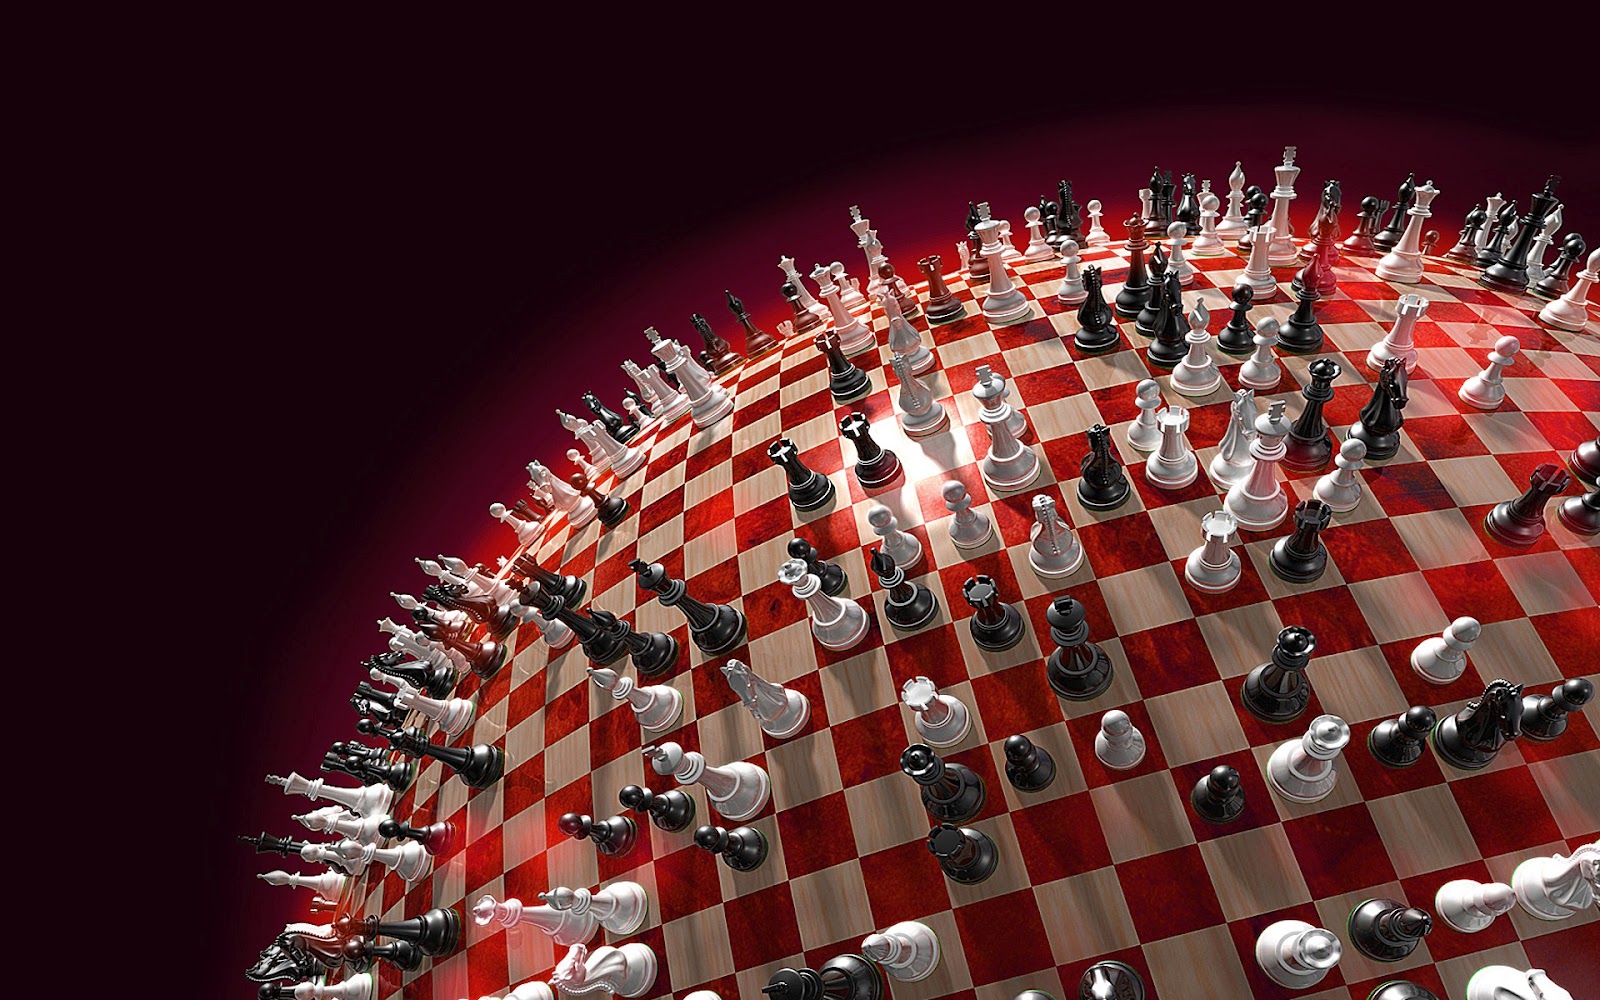 papel tapiz de ajedrez 3d,juegos,juegos de interior y deportes,ajedrez,rojo,juego de mesa